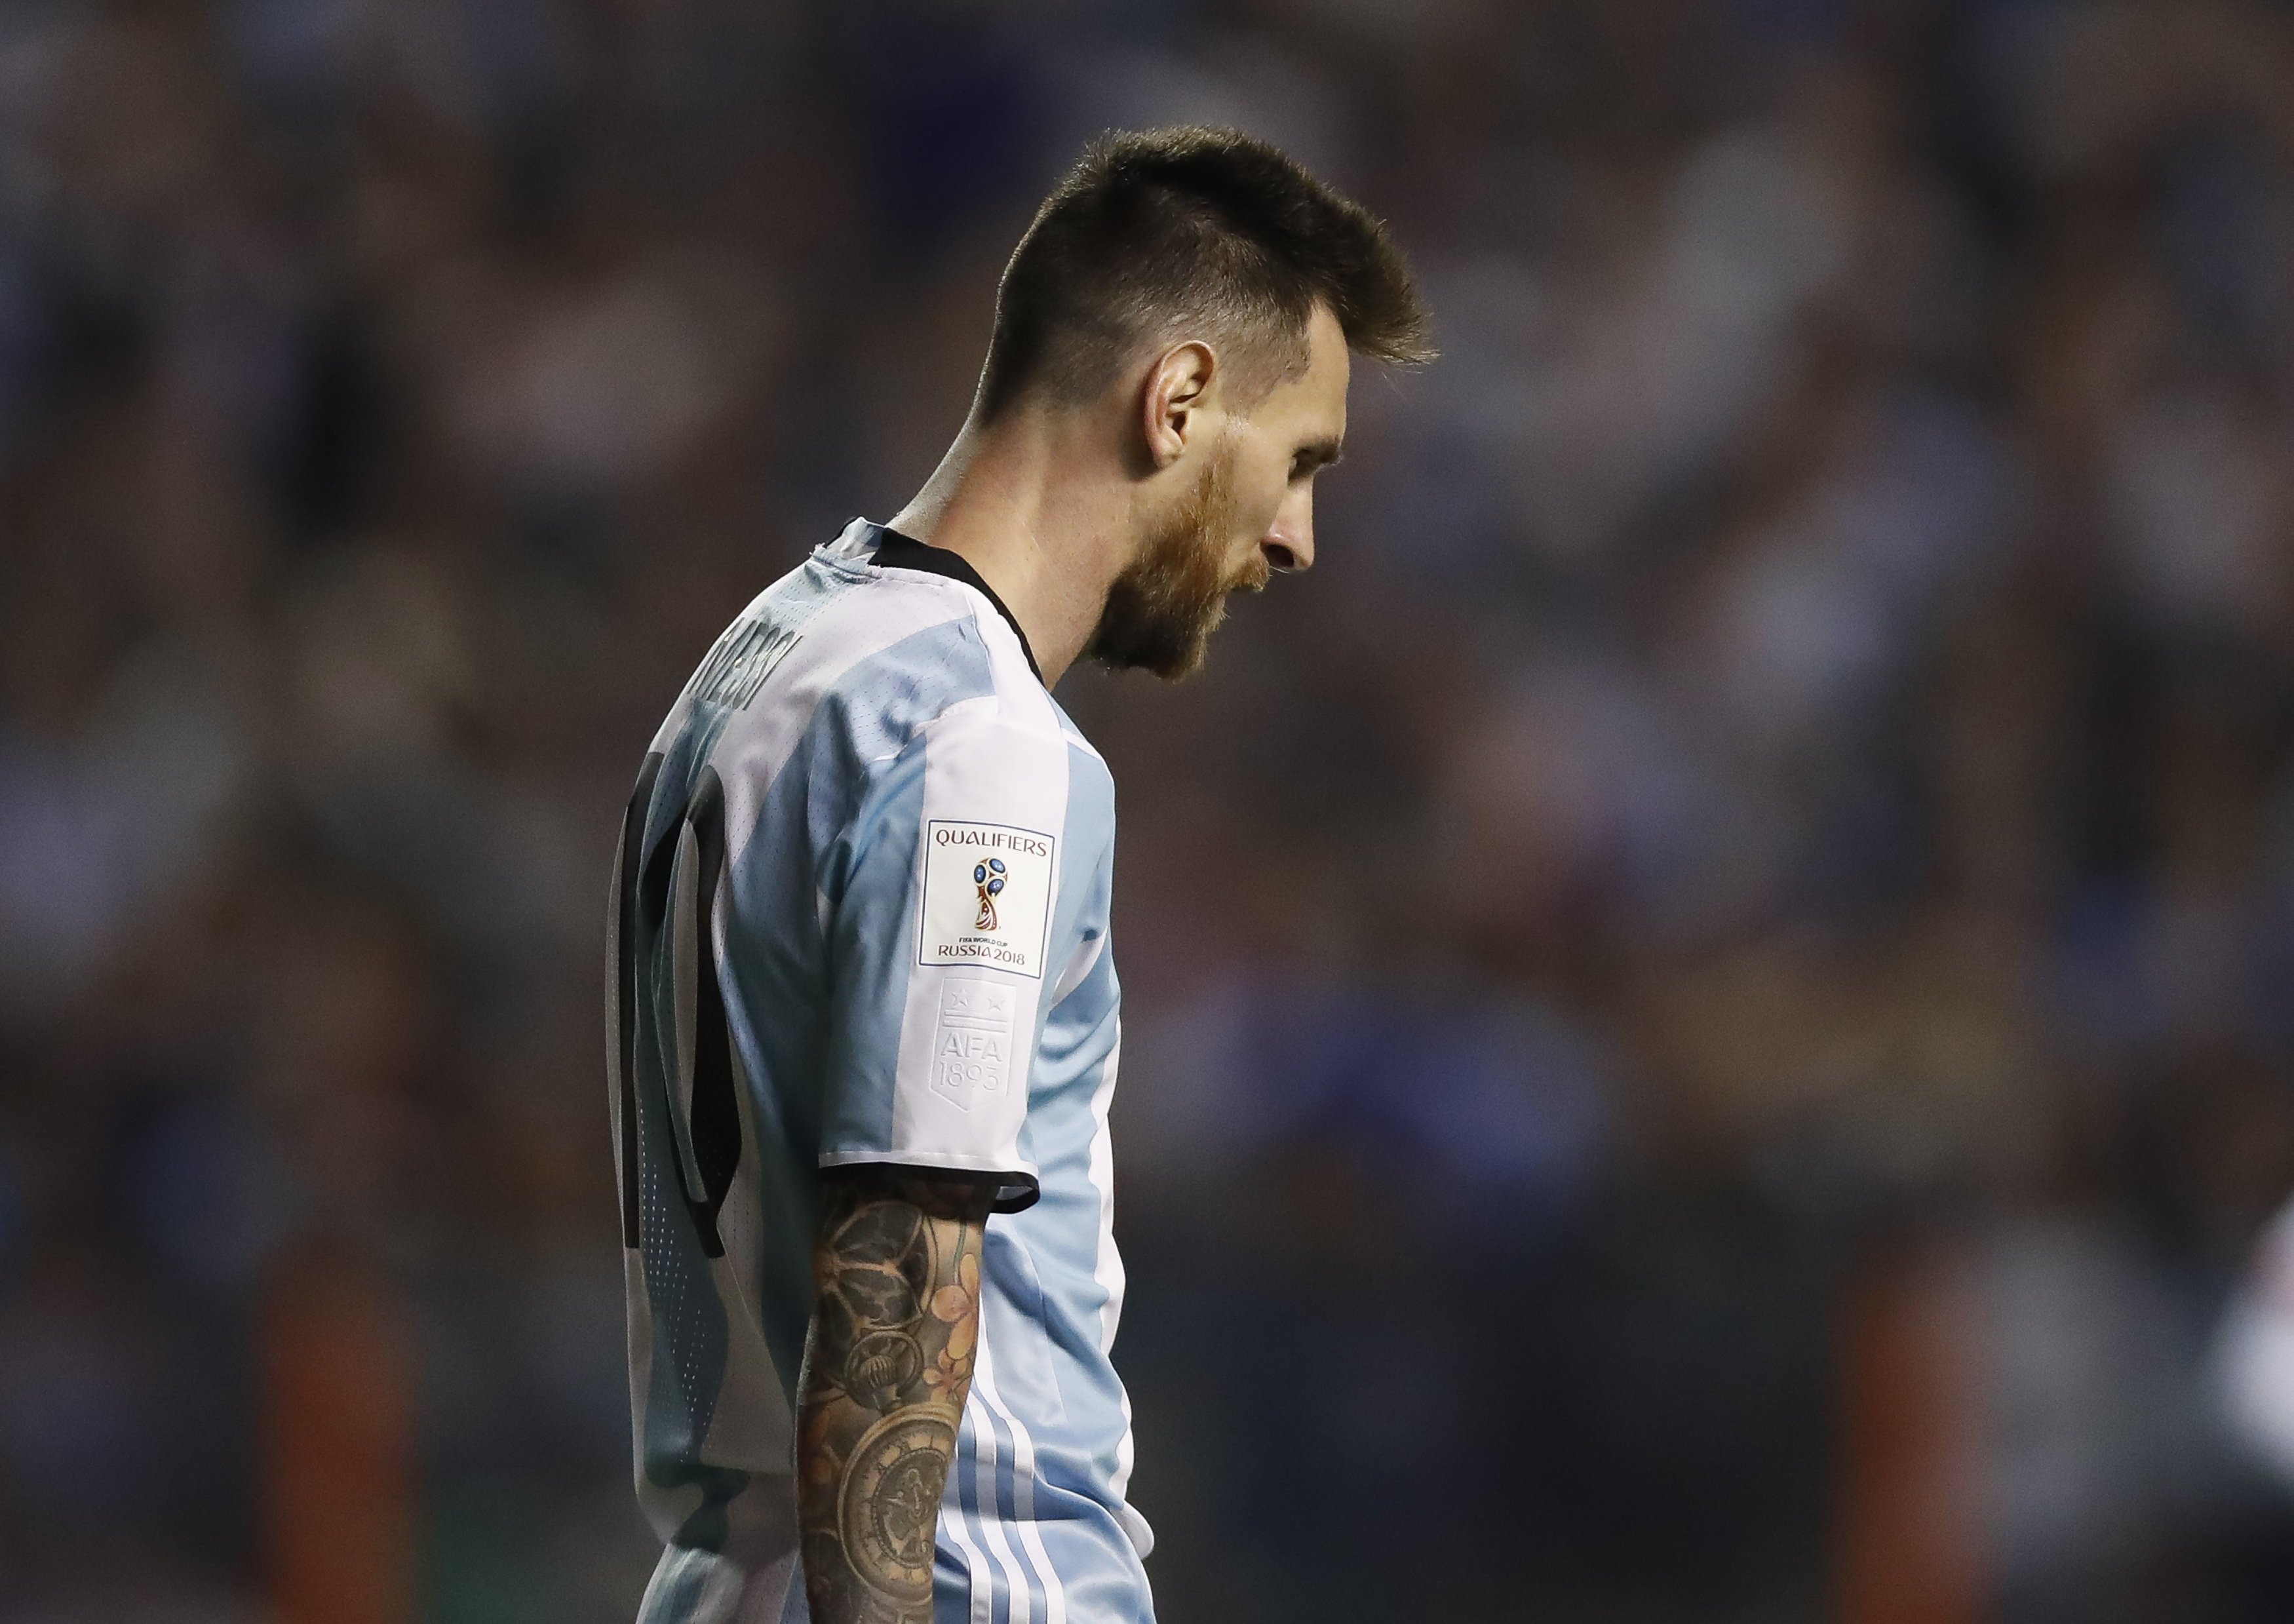 El sorteig del Mundial somriu a Espanya i gira l'esquena a Messi